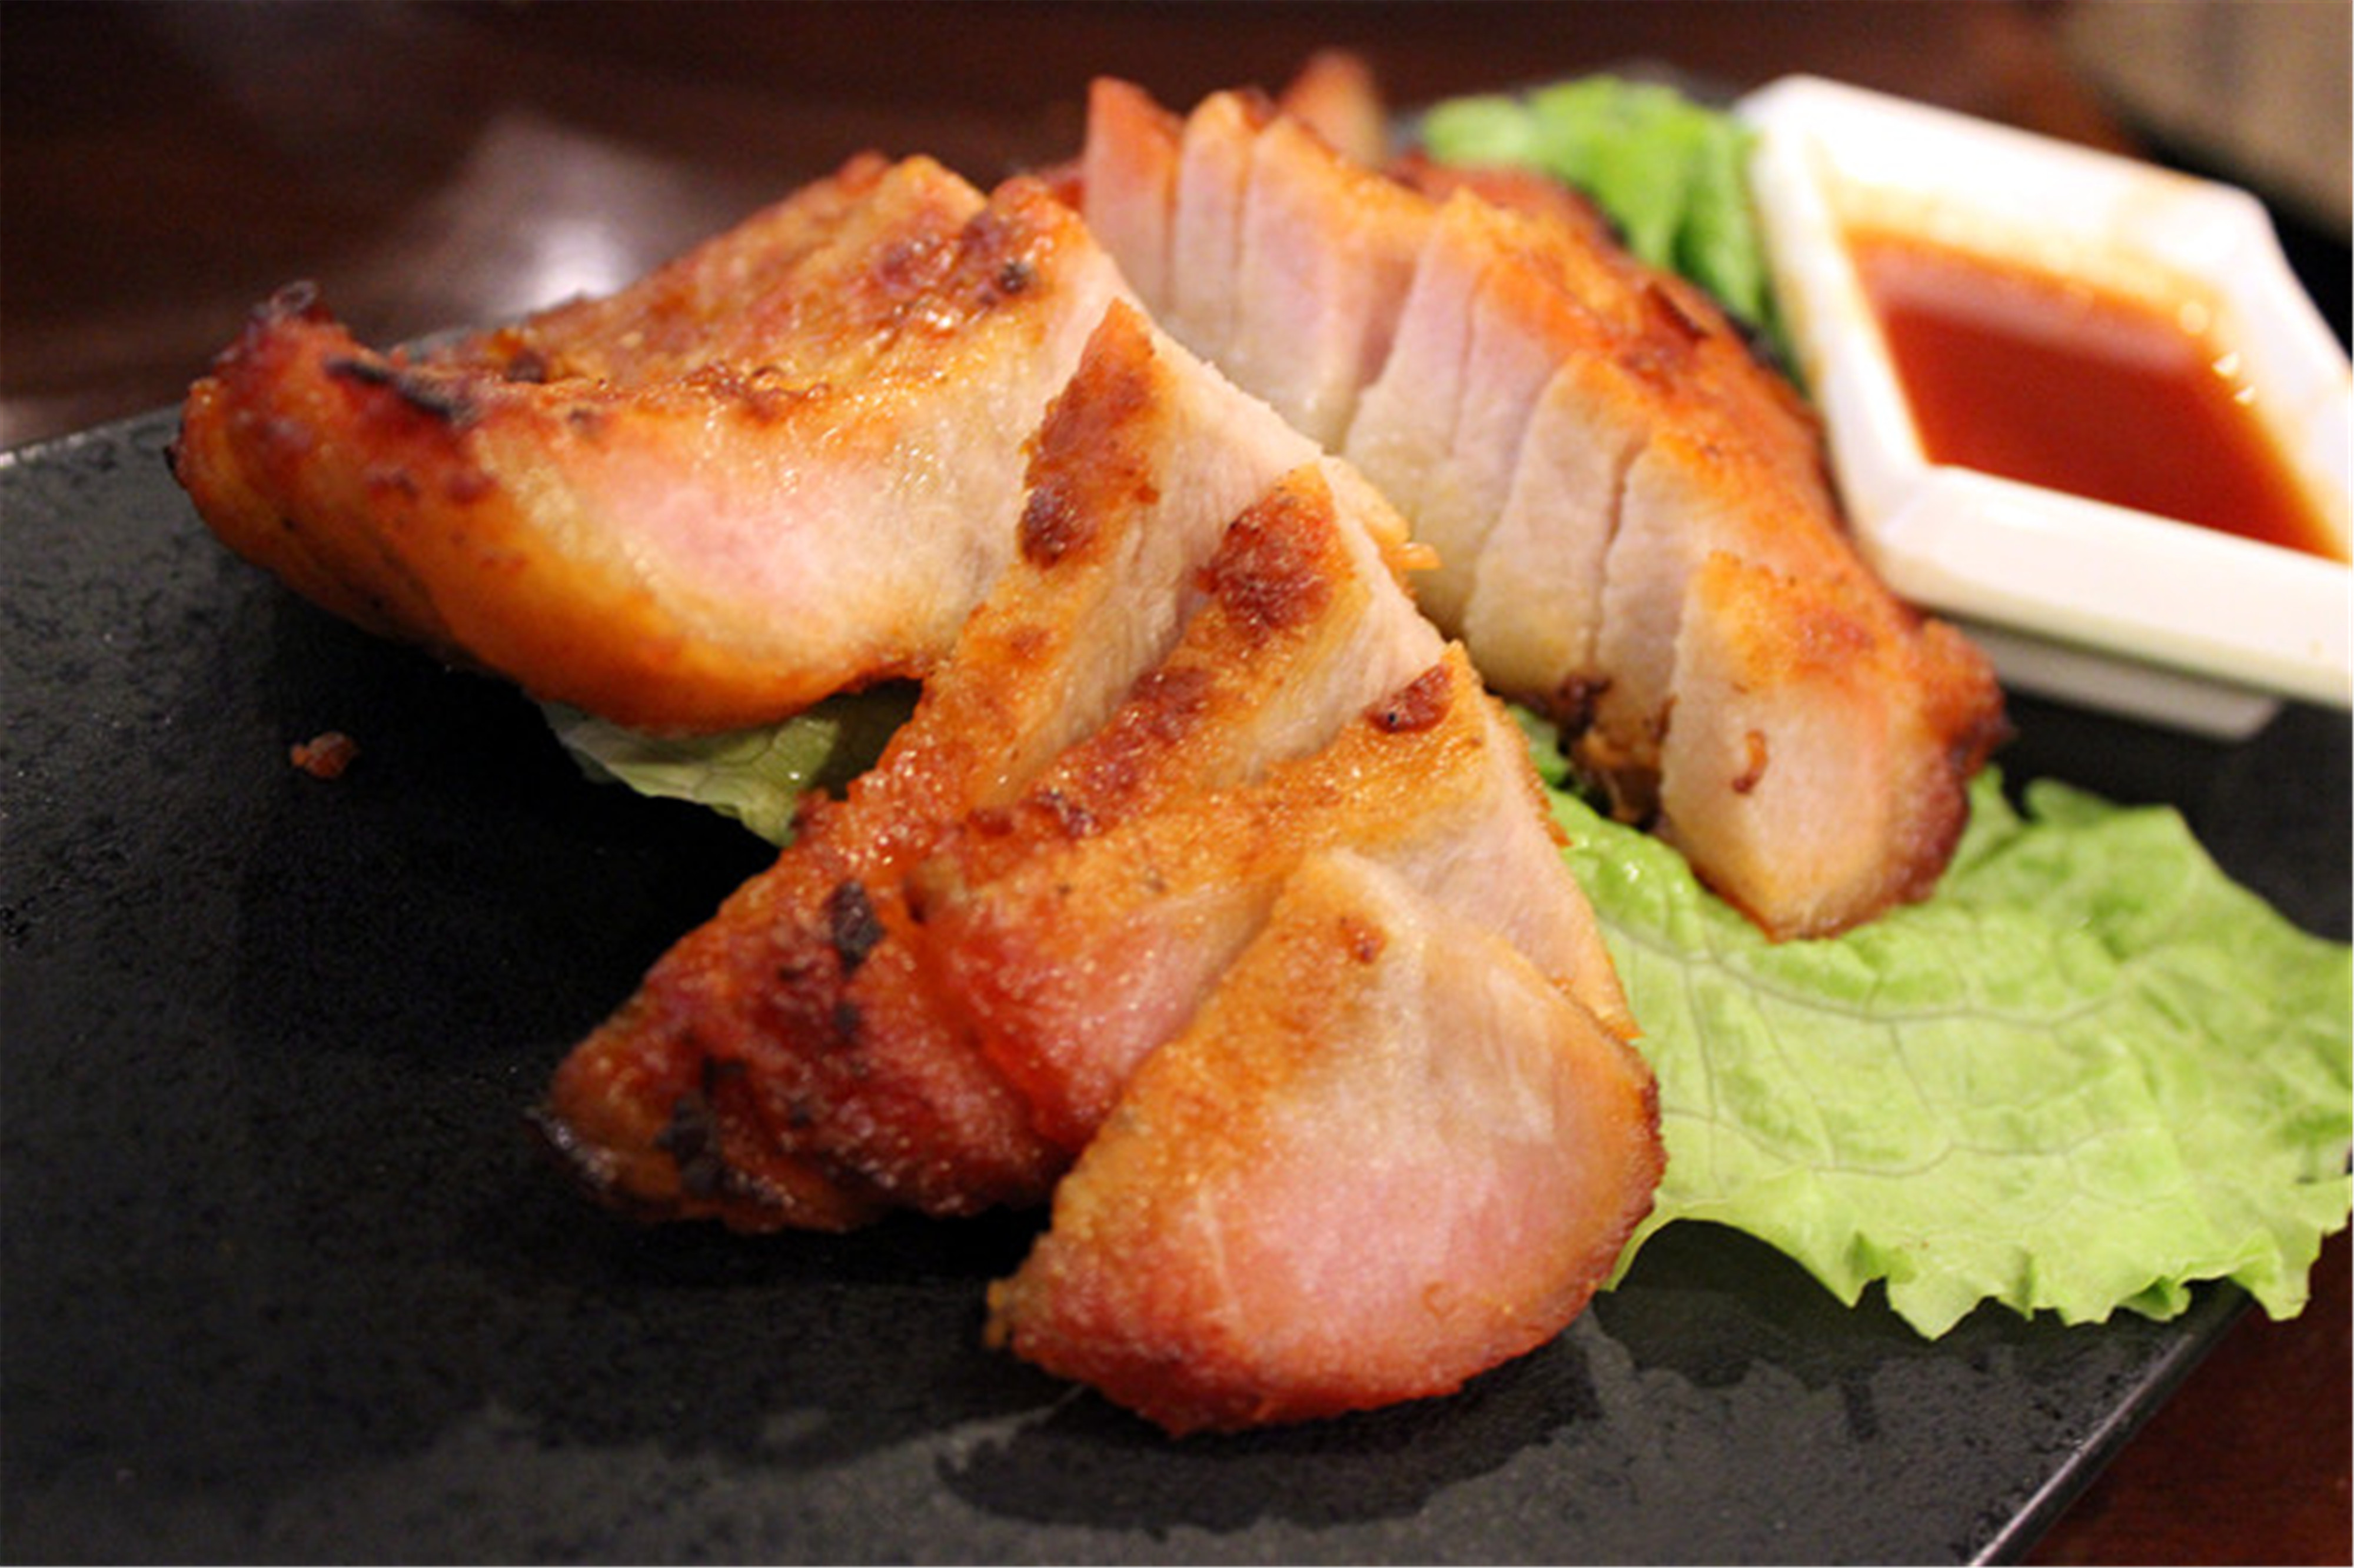 【脆皮鸡】鸡肉肉质厚实,但吃口很干,而且木有什么味道,沾着咖喱吃!